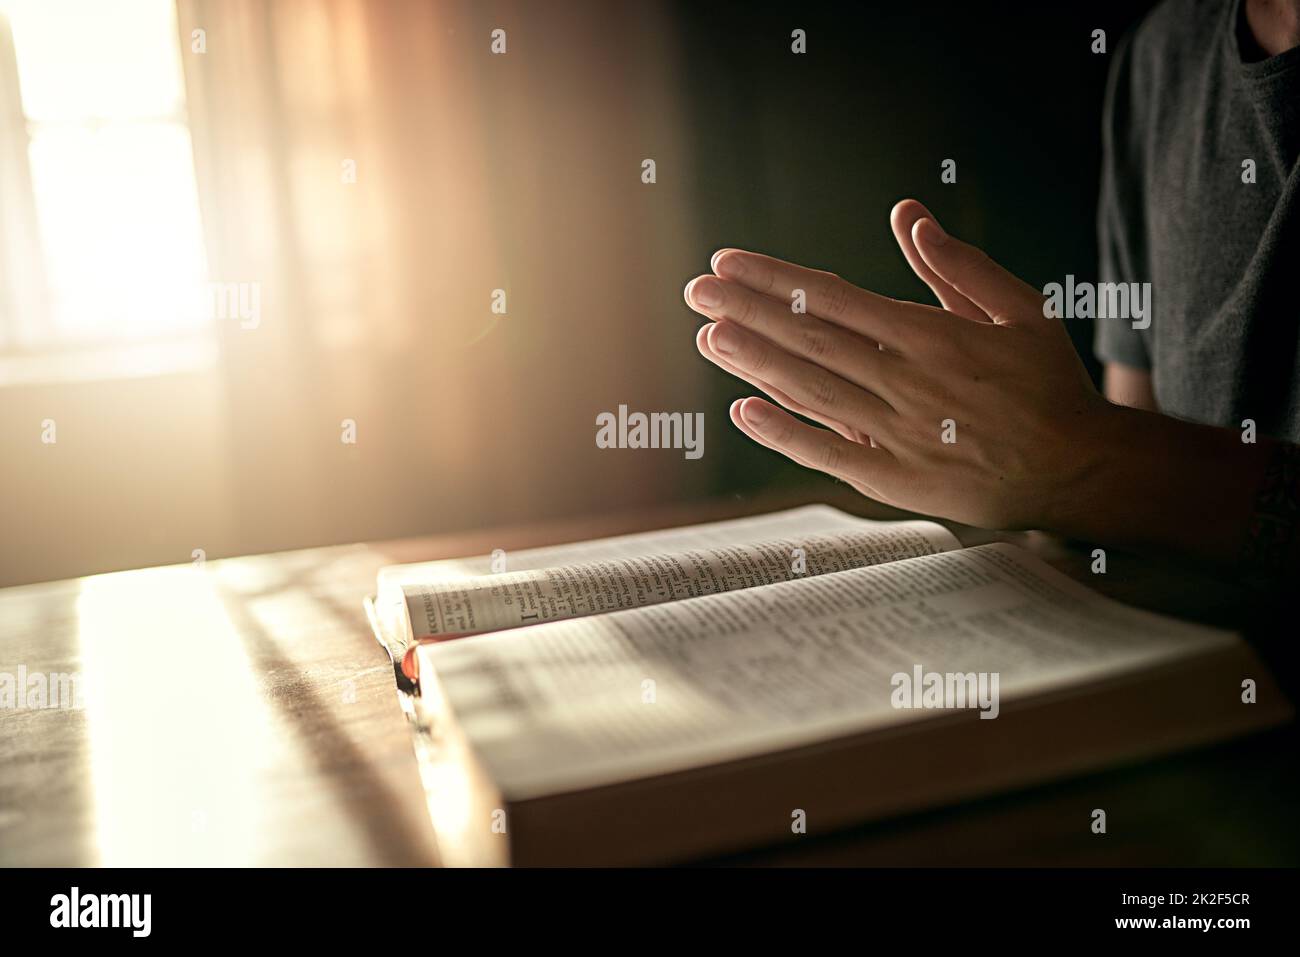 Iniziare la giornata nel modo giusto. Scatto corto di un uomo inidentificabile che stringe le mani in preghiera sopra una Bibbia aperta. Foto Stock